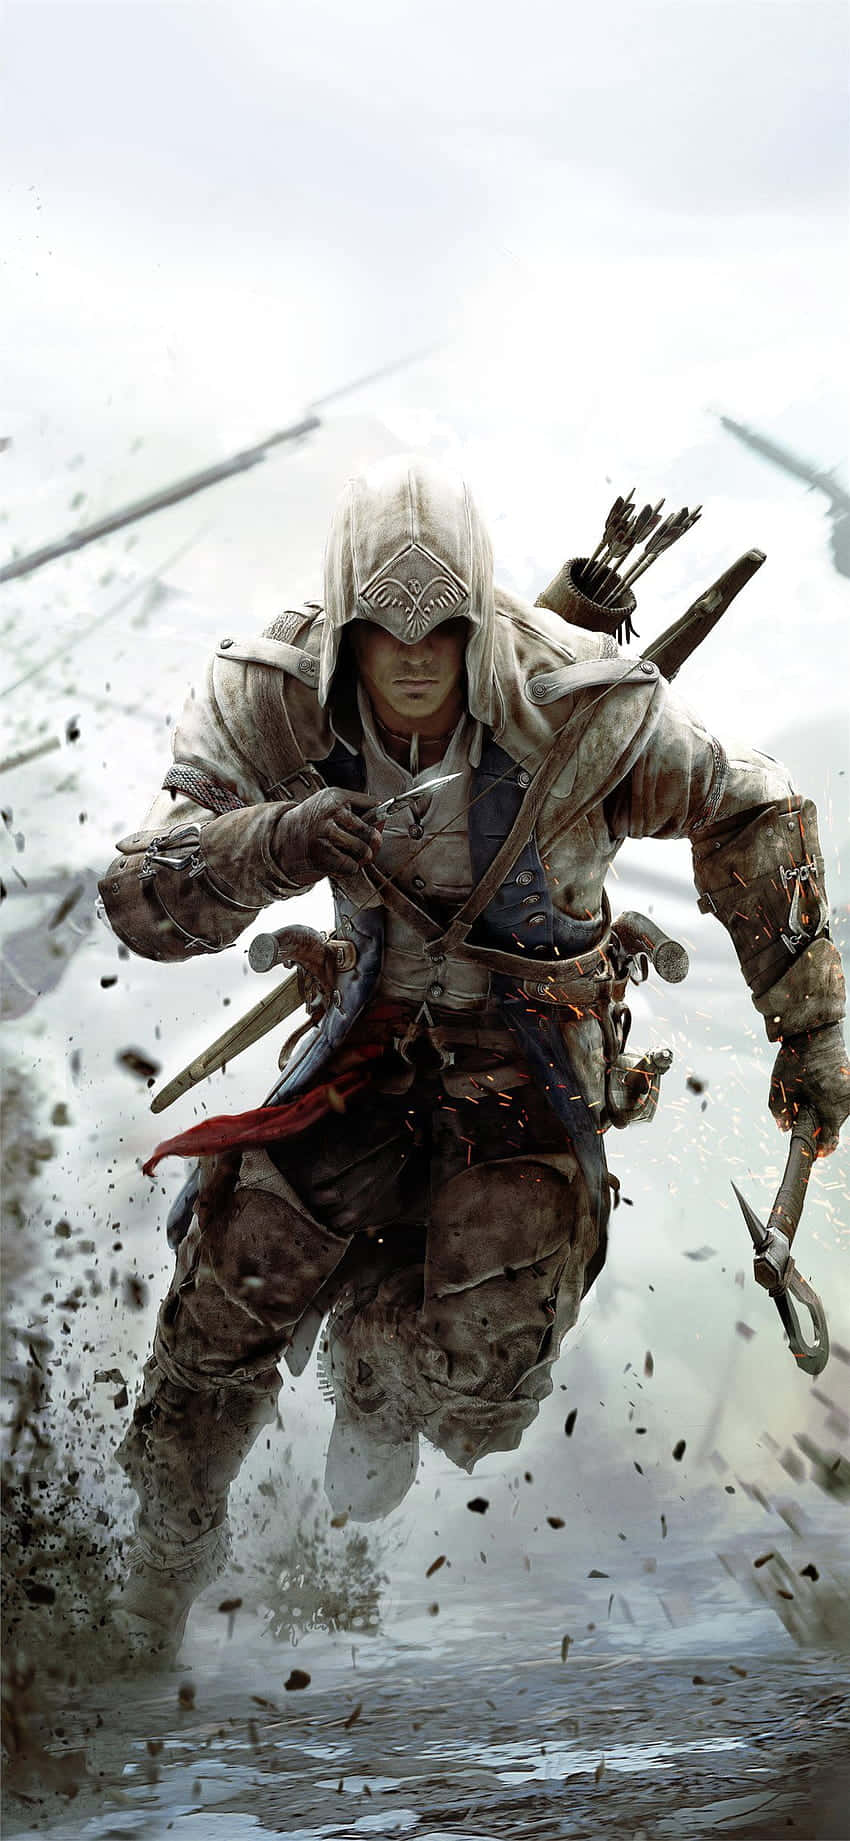 Erkundedie Welt Von Assassin's Creed Valhalla Mit Dem Iphone X.